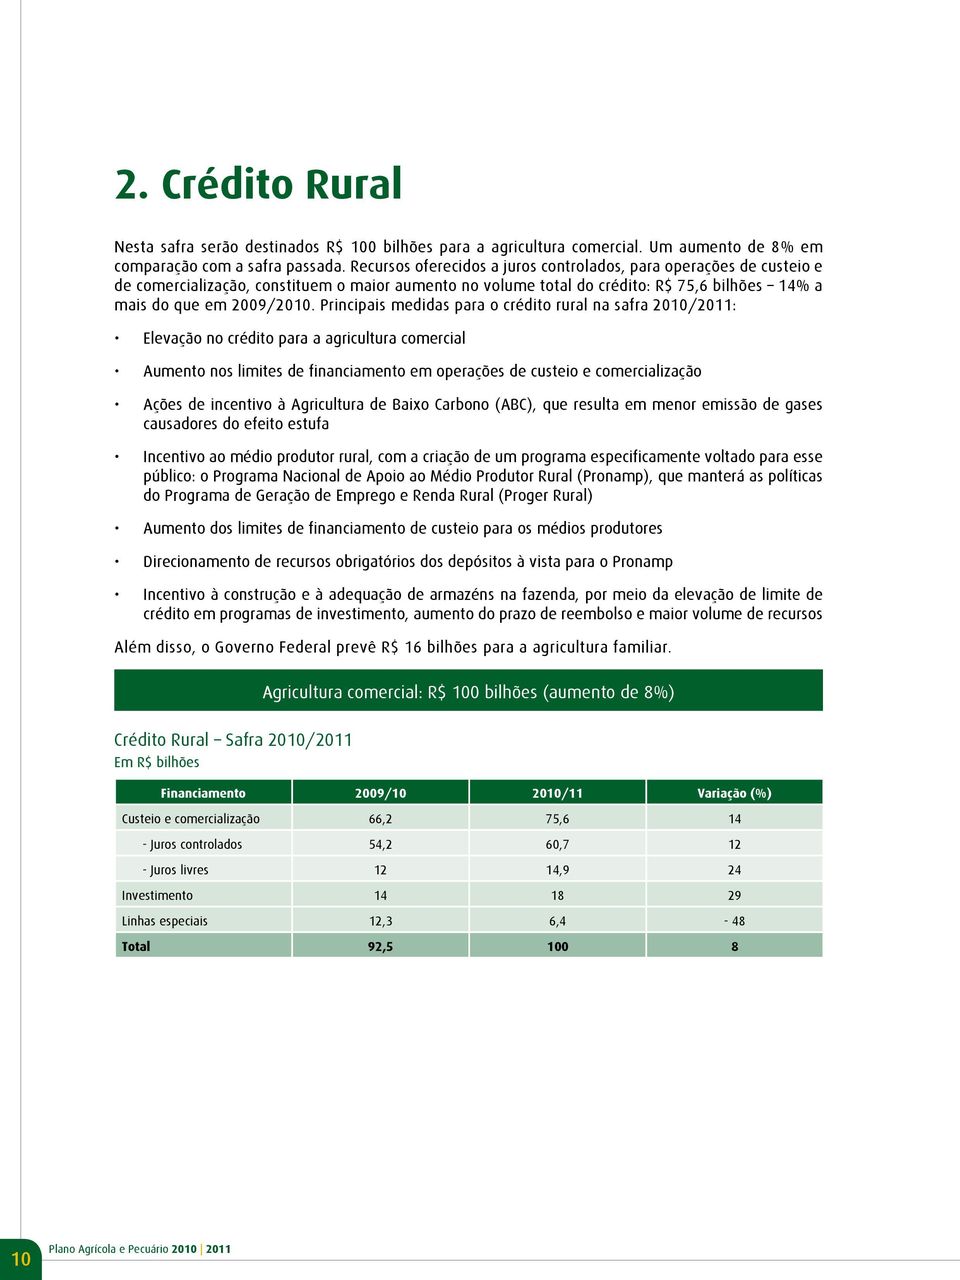 Principais medidas para o crédito rural na safra 2010/2011: Elevação no crédito para a agricultura comercial Aumento nos limites de financiamento em operações de custeio e comercialização Ações de